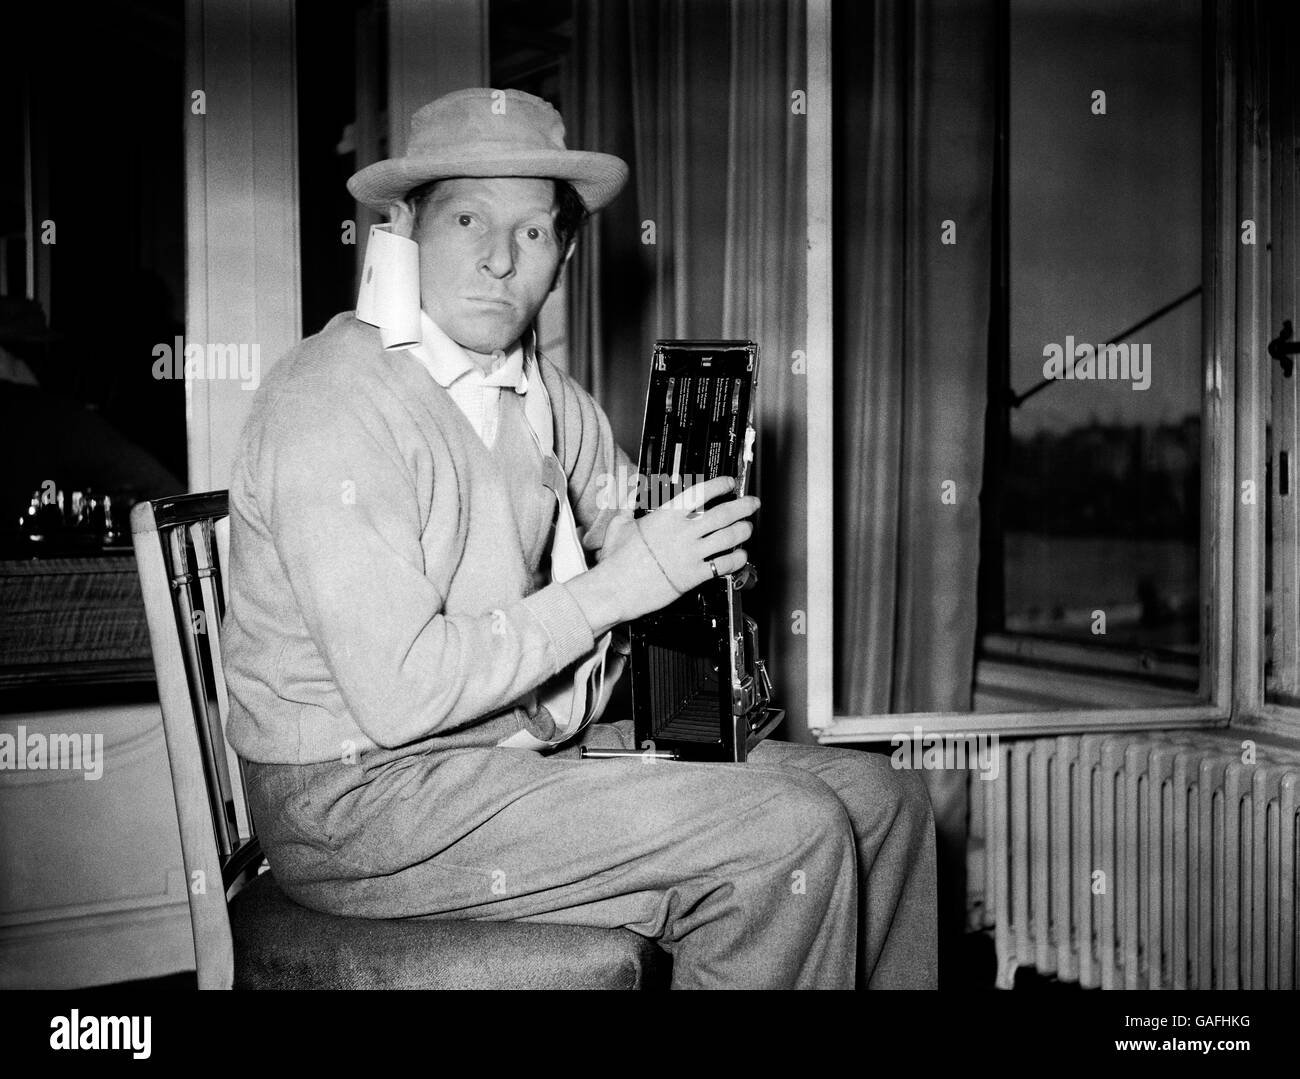 Der große amerikanische Komiker Danny Kaye befand sich in einer Art Dilemma, als der Fotograf zu seinem Londoner Hotel ging, um ihn zu fotografieren. Irgendwie wurde die Kamera, die er besitzt - eine Polaroid Land Camera - durcheinander gebracht und er fand sich mit der Filmrolle um den Hals drapiert wieder. Stockfoto